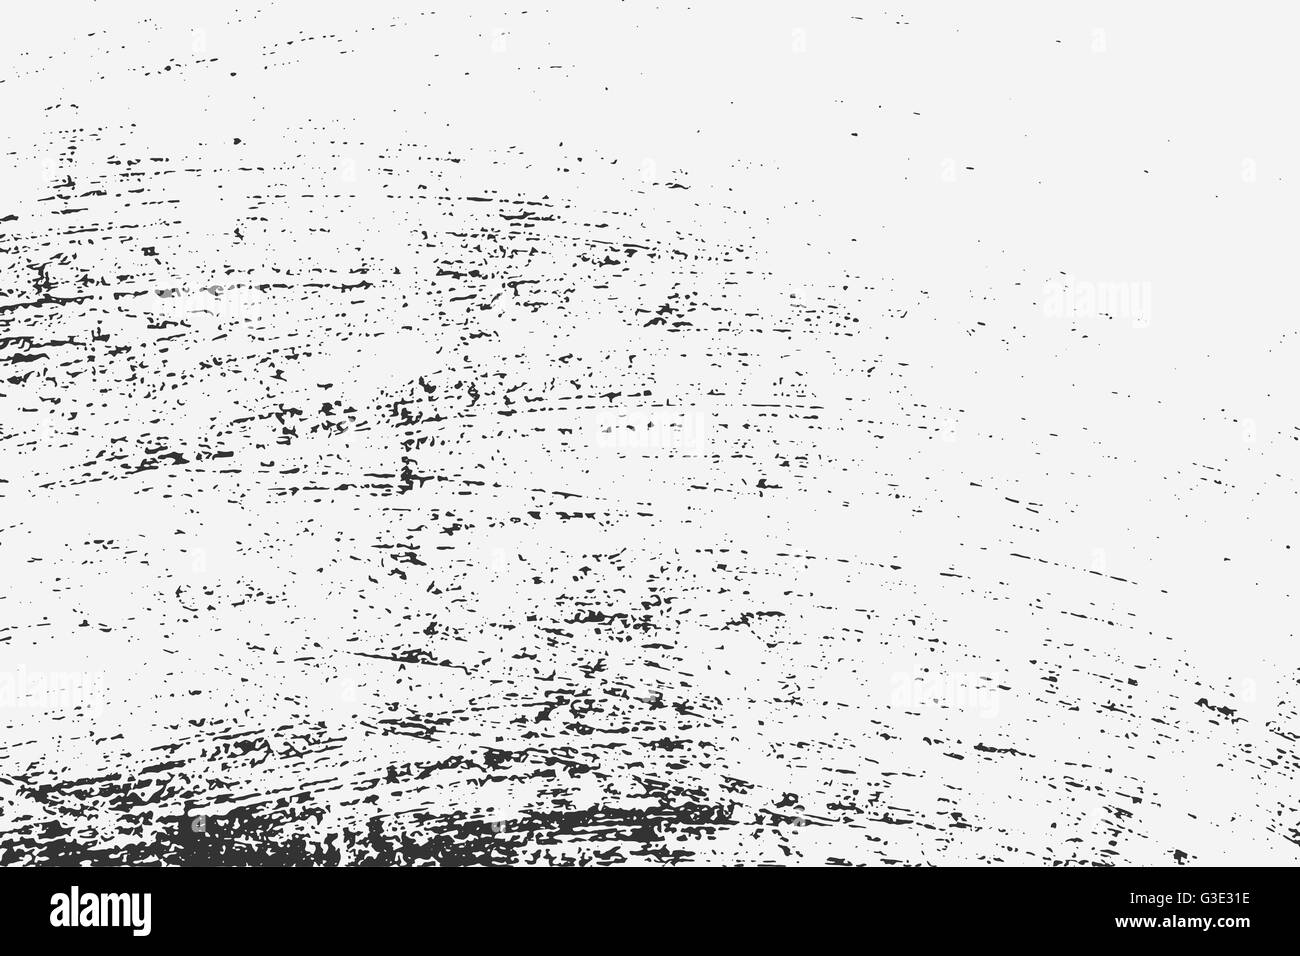 Abstract grunge background. Tableau noir grunge texture. Vector illustration of black abstract grunge fond pour votre conception Illustration de Vecteur